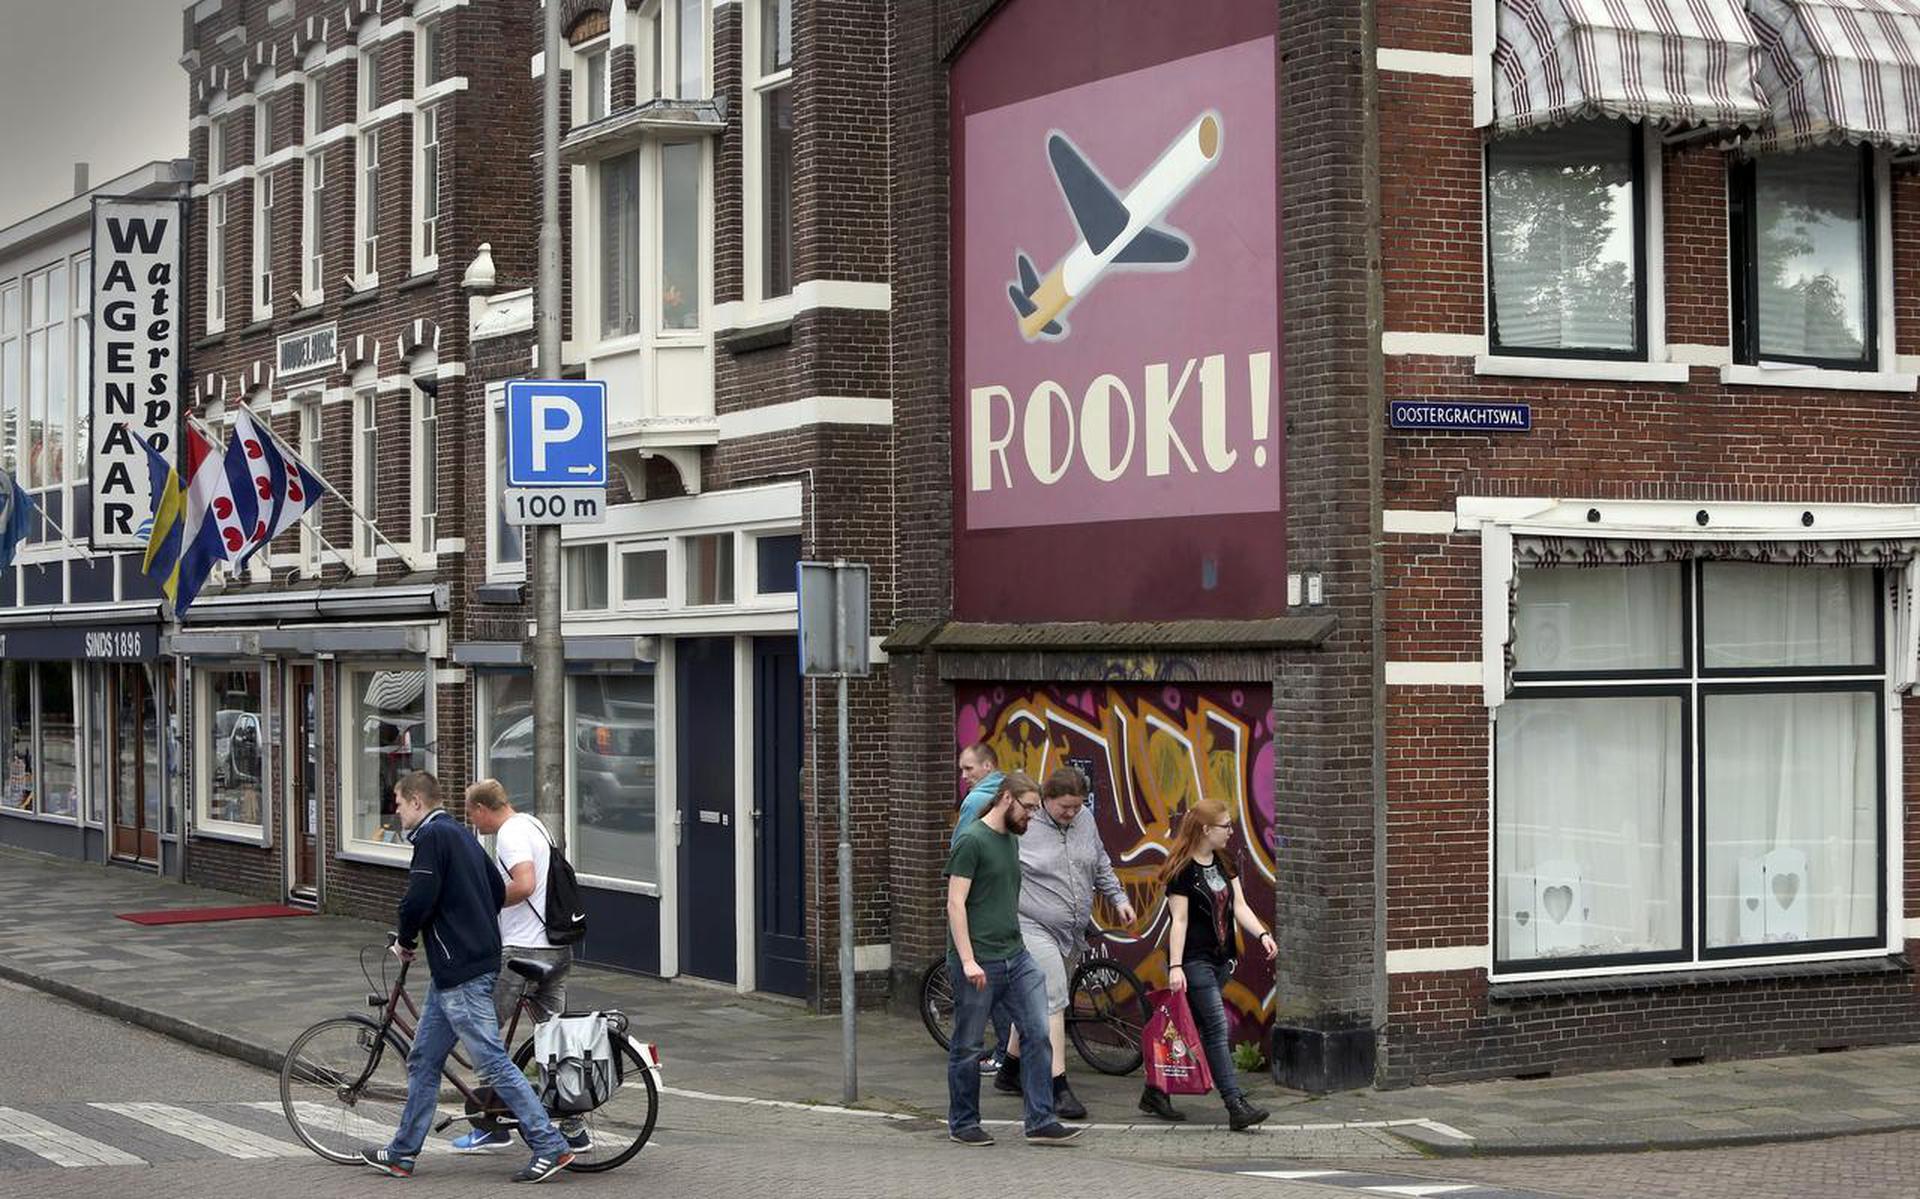 Historische tabaksreclame siert een gevel aan de Wijbrand de Geeststraat in Leeuwarden. FOTO NIELS WESTRA
